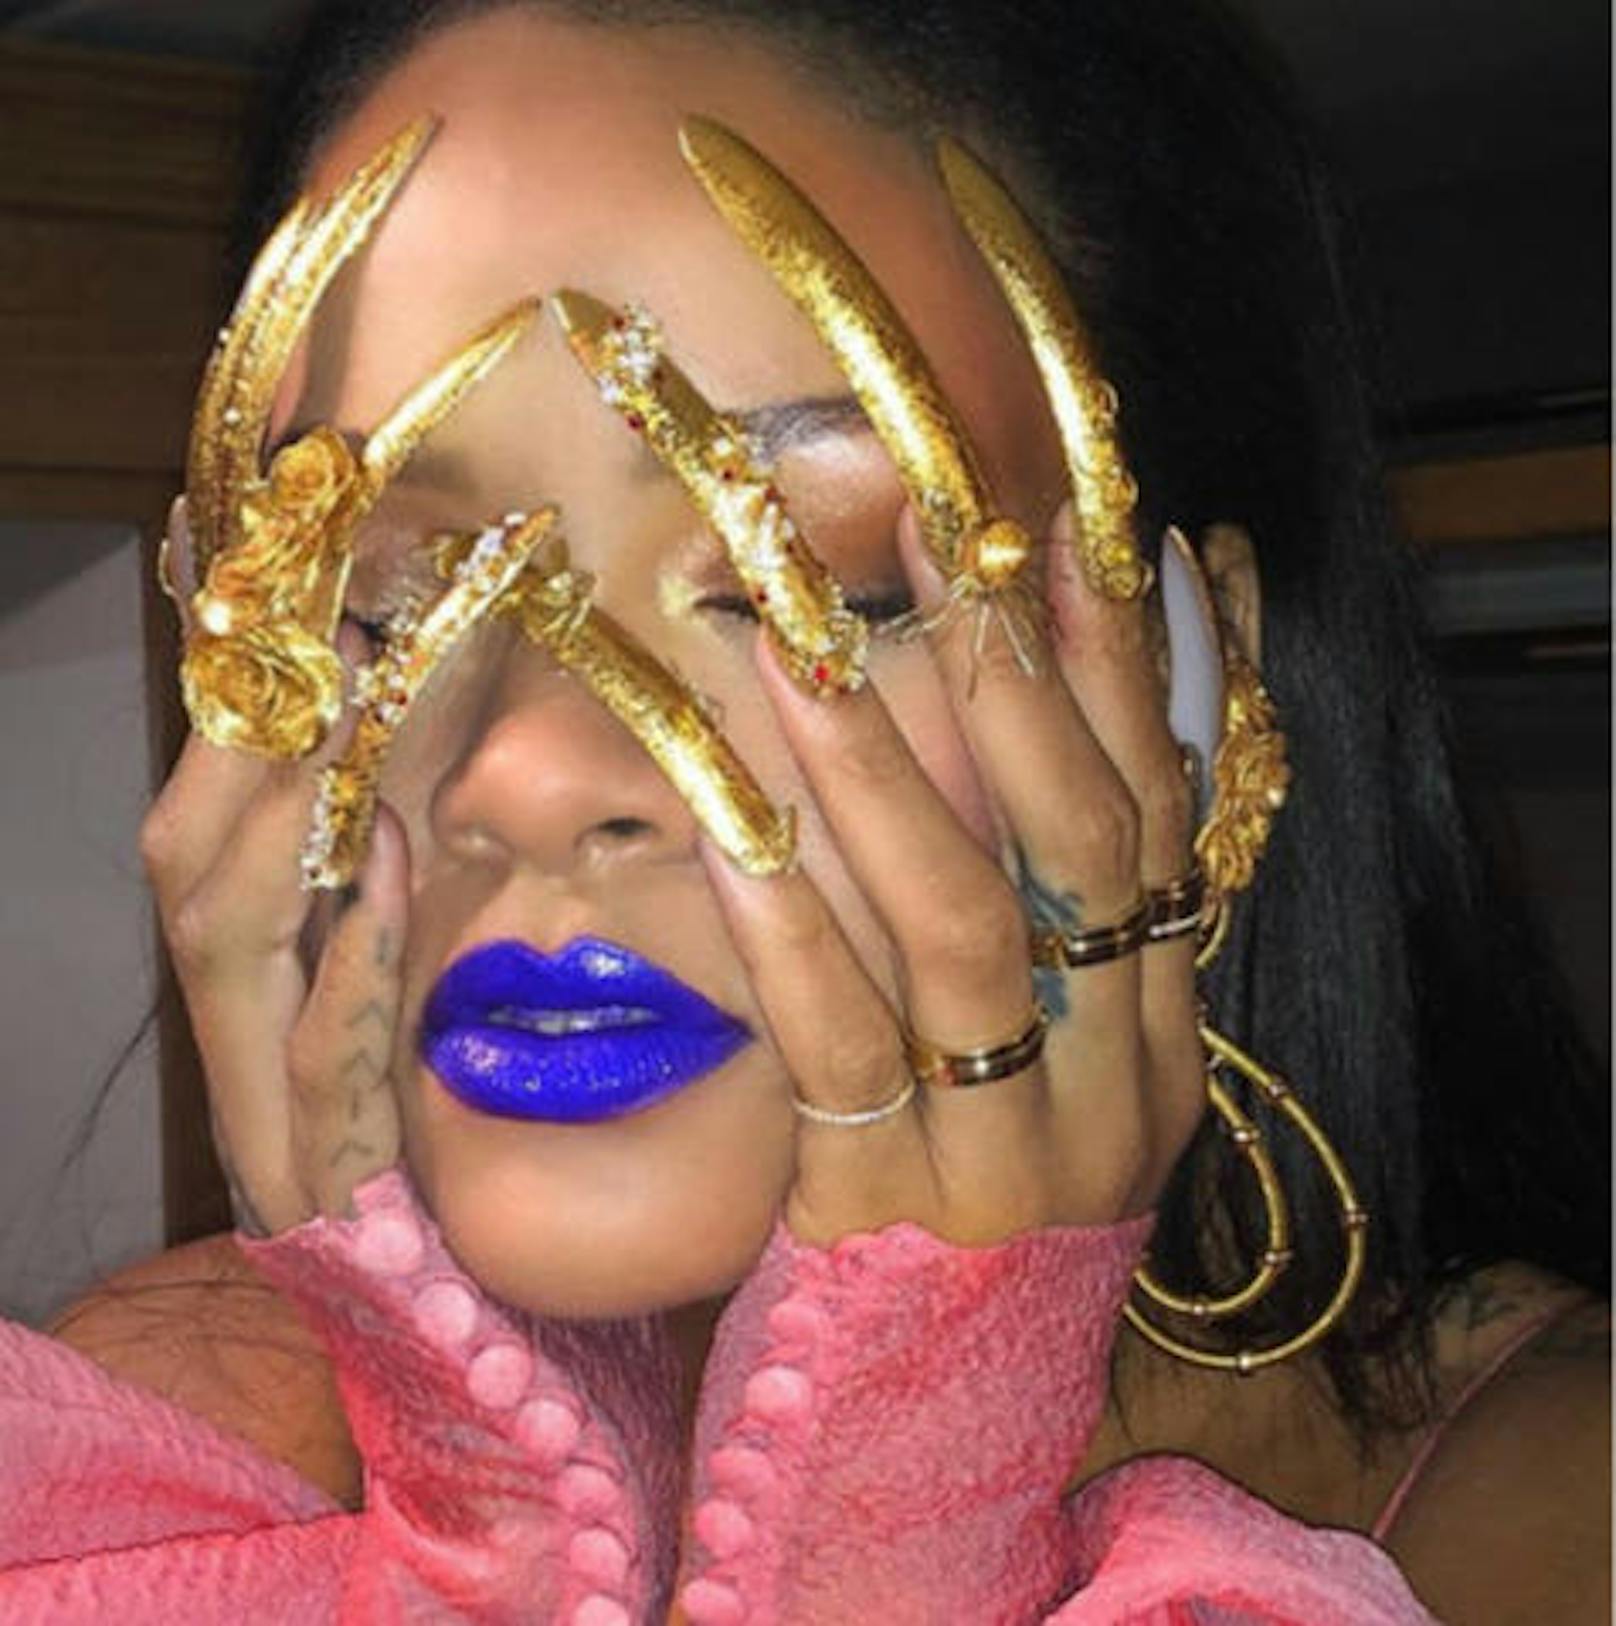 05.09.2018: Rihannas goldene Nägel sind ganz schön spitz! Top oder Flop? Ihre Fans sind sich nicht ganz einig.